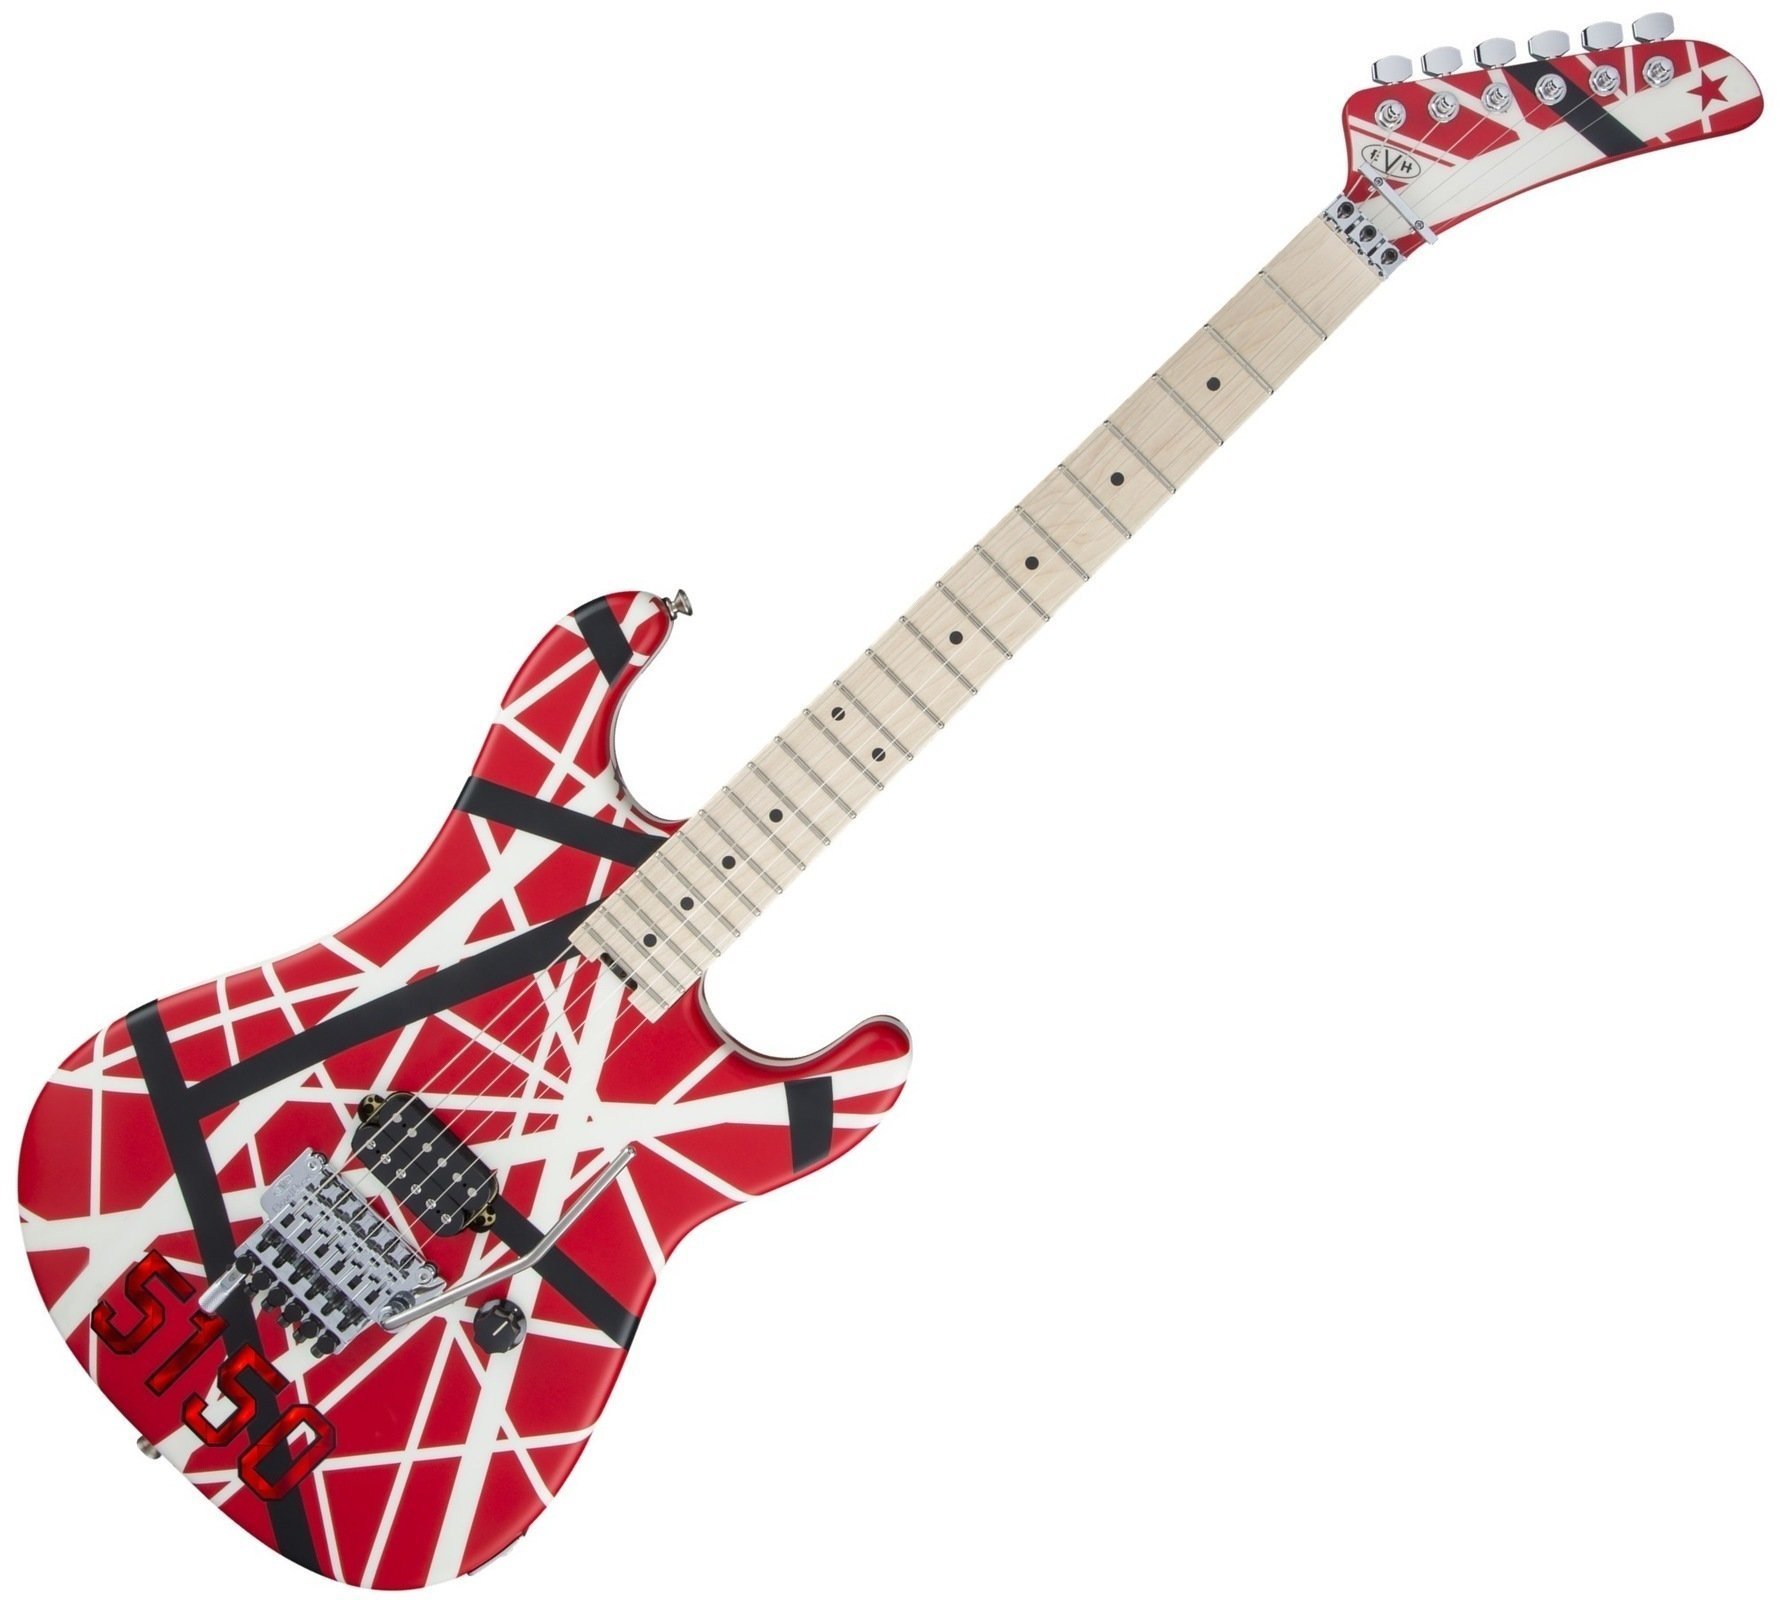 Elektrická gitara EVH Striped Series 5150 MN Red Black and White Stripes